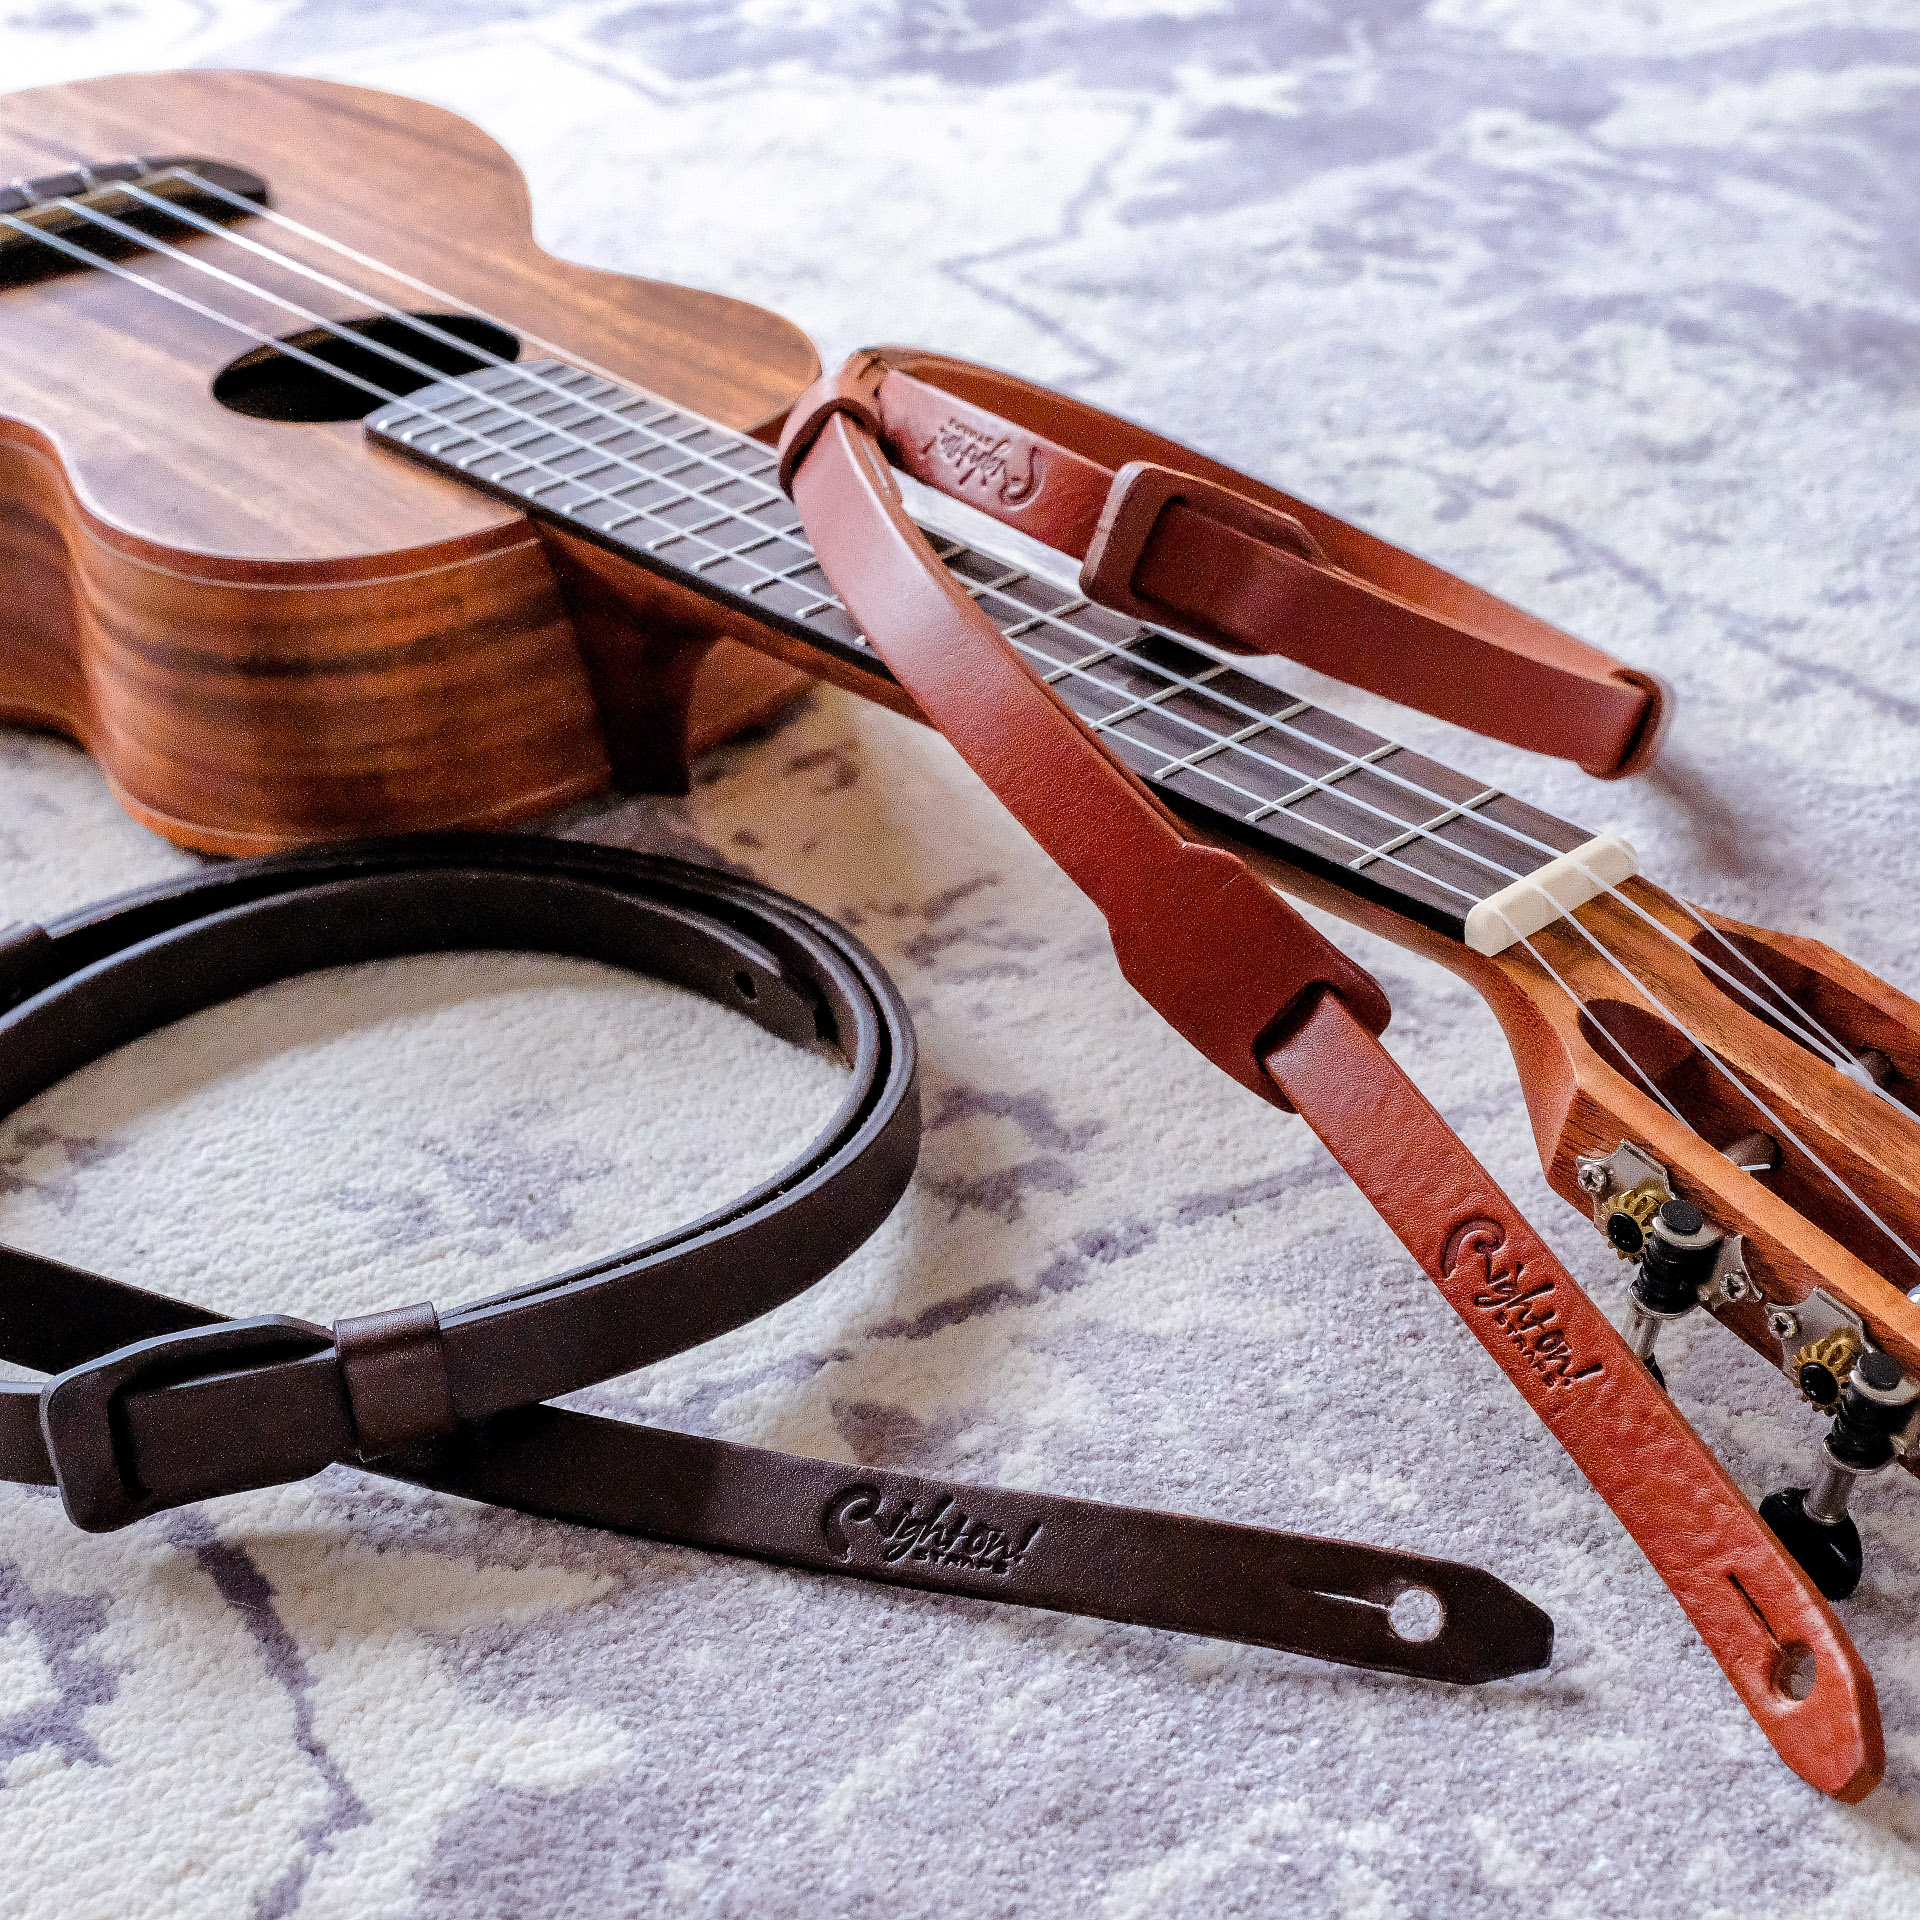 straps and straps, vegan ukulele straps, vegan ukulele straps